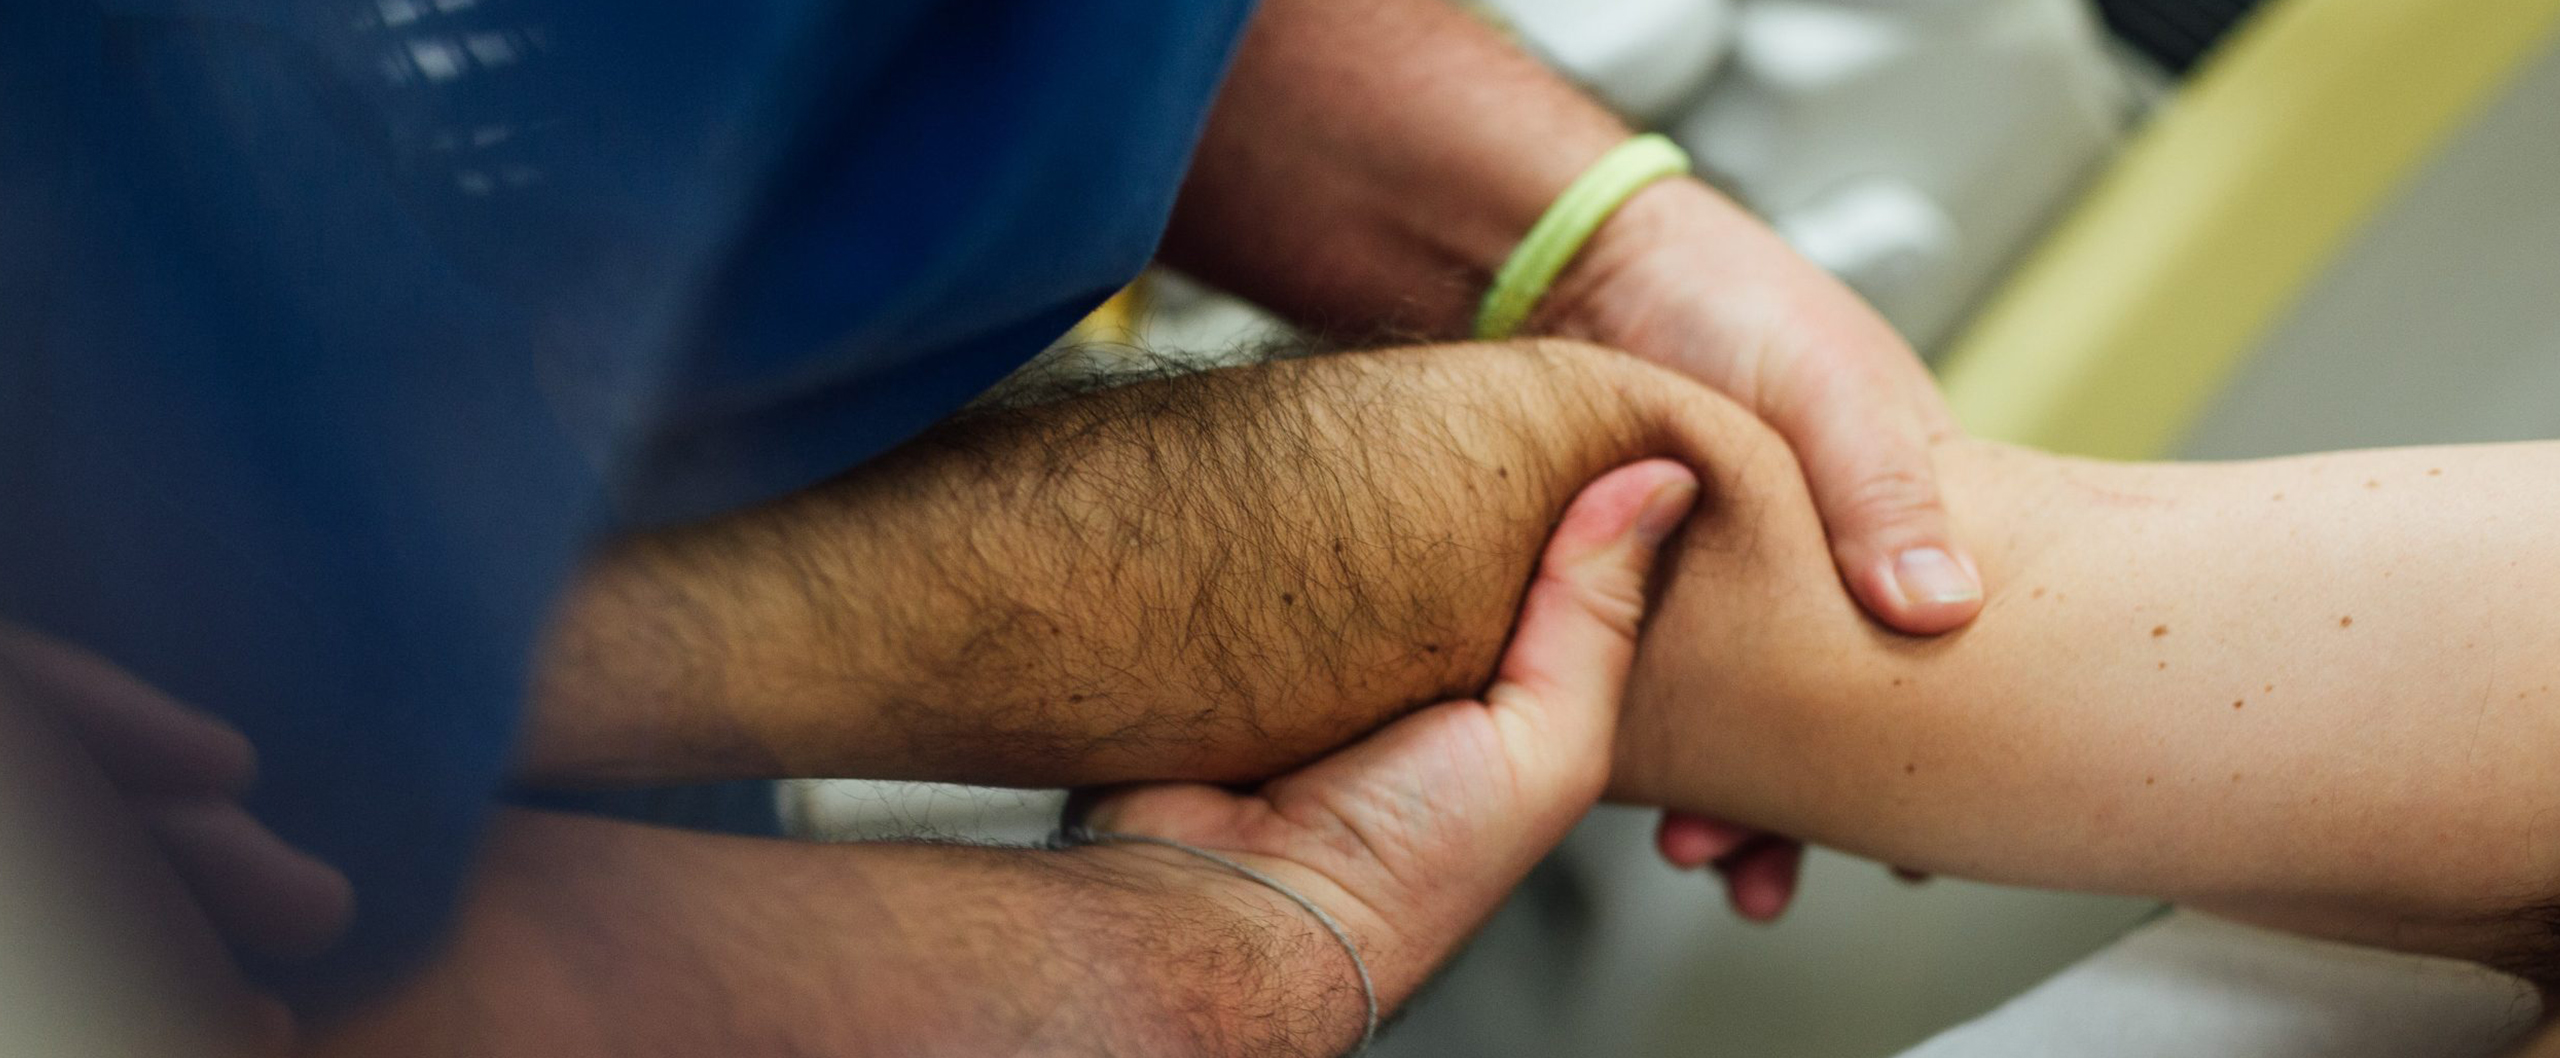 Un fisioterapueta de Mdiesport realiza una exploración cpon las manos en el brazo de un atleta lesionado